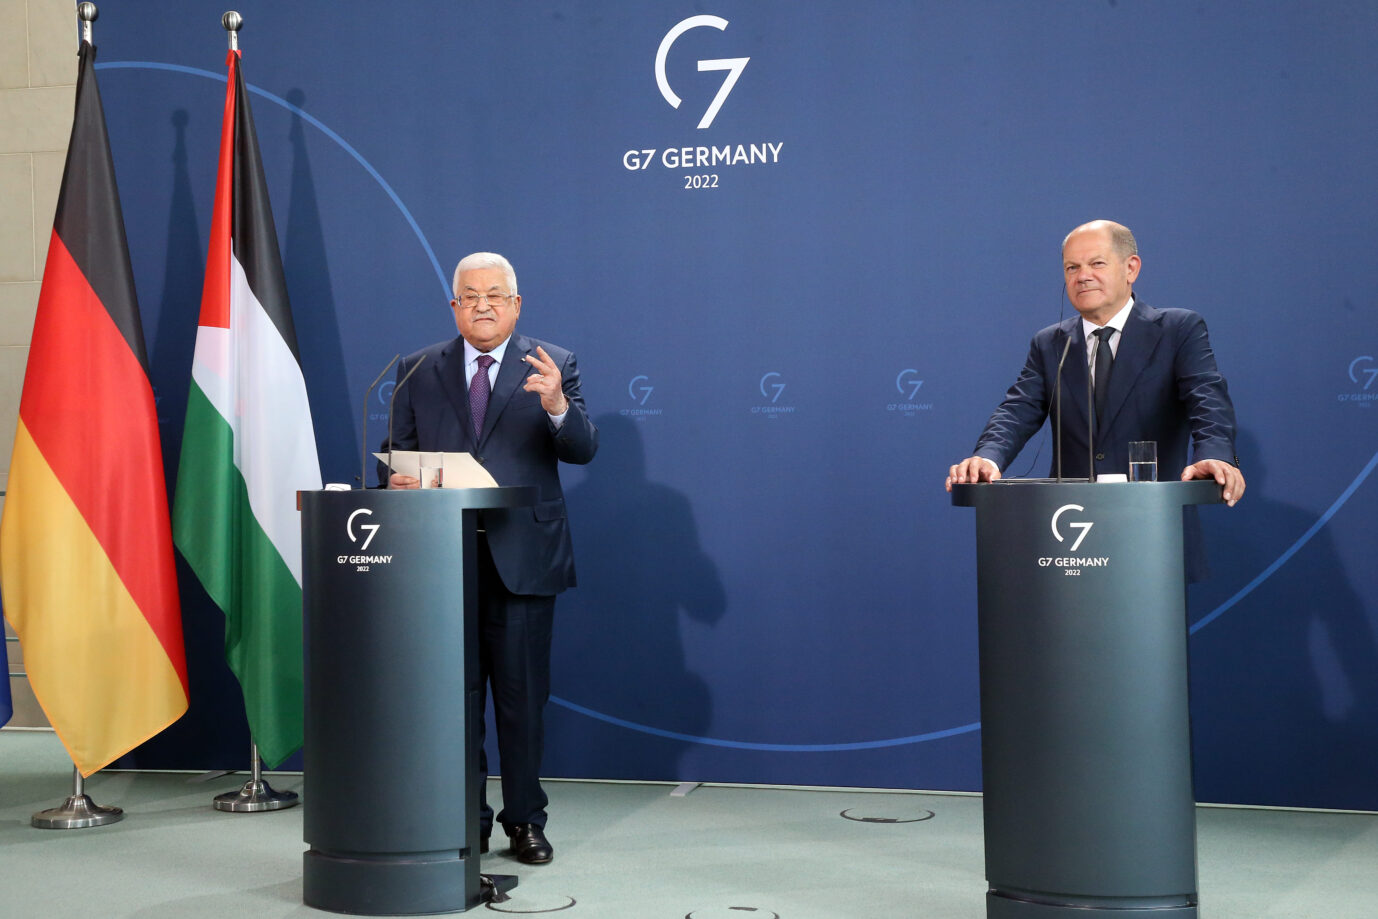 Pressekonferenz von Scholz und Abbas: Warum schwieg der Kanzler? Foto: picture alliance/dpa | Wolfgang Kumm